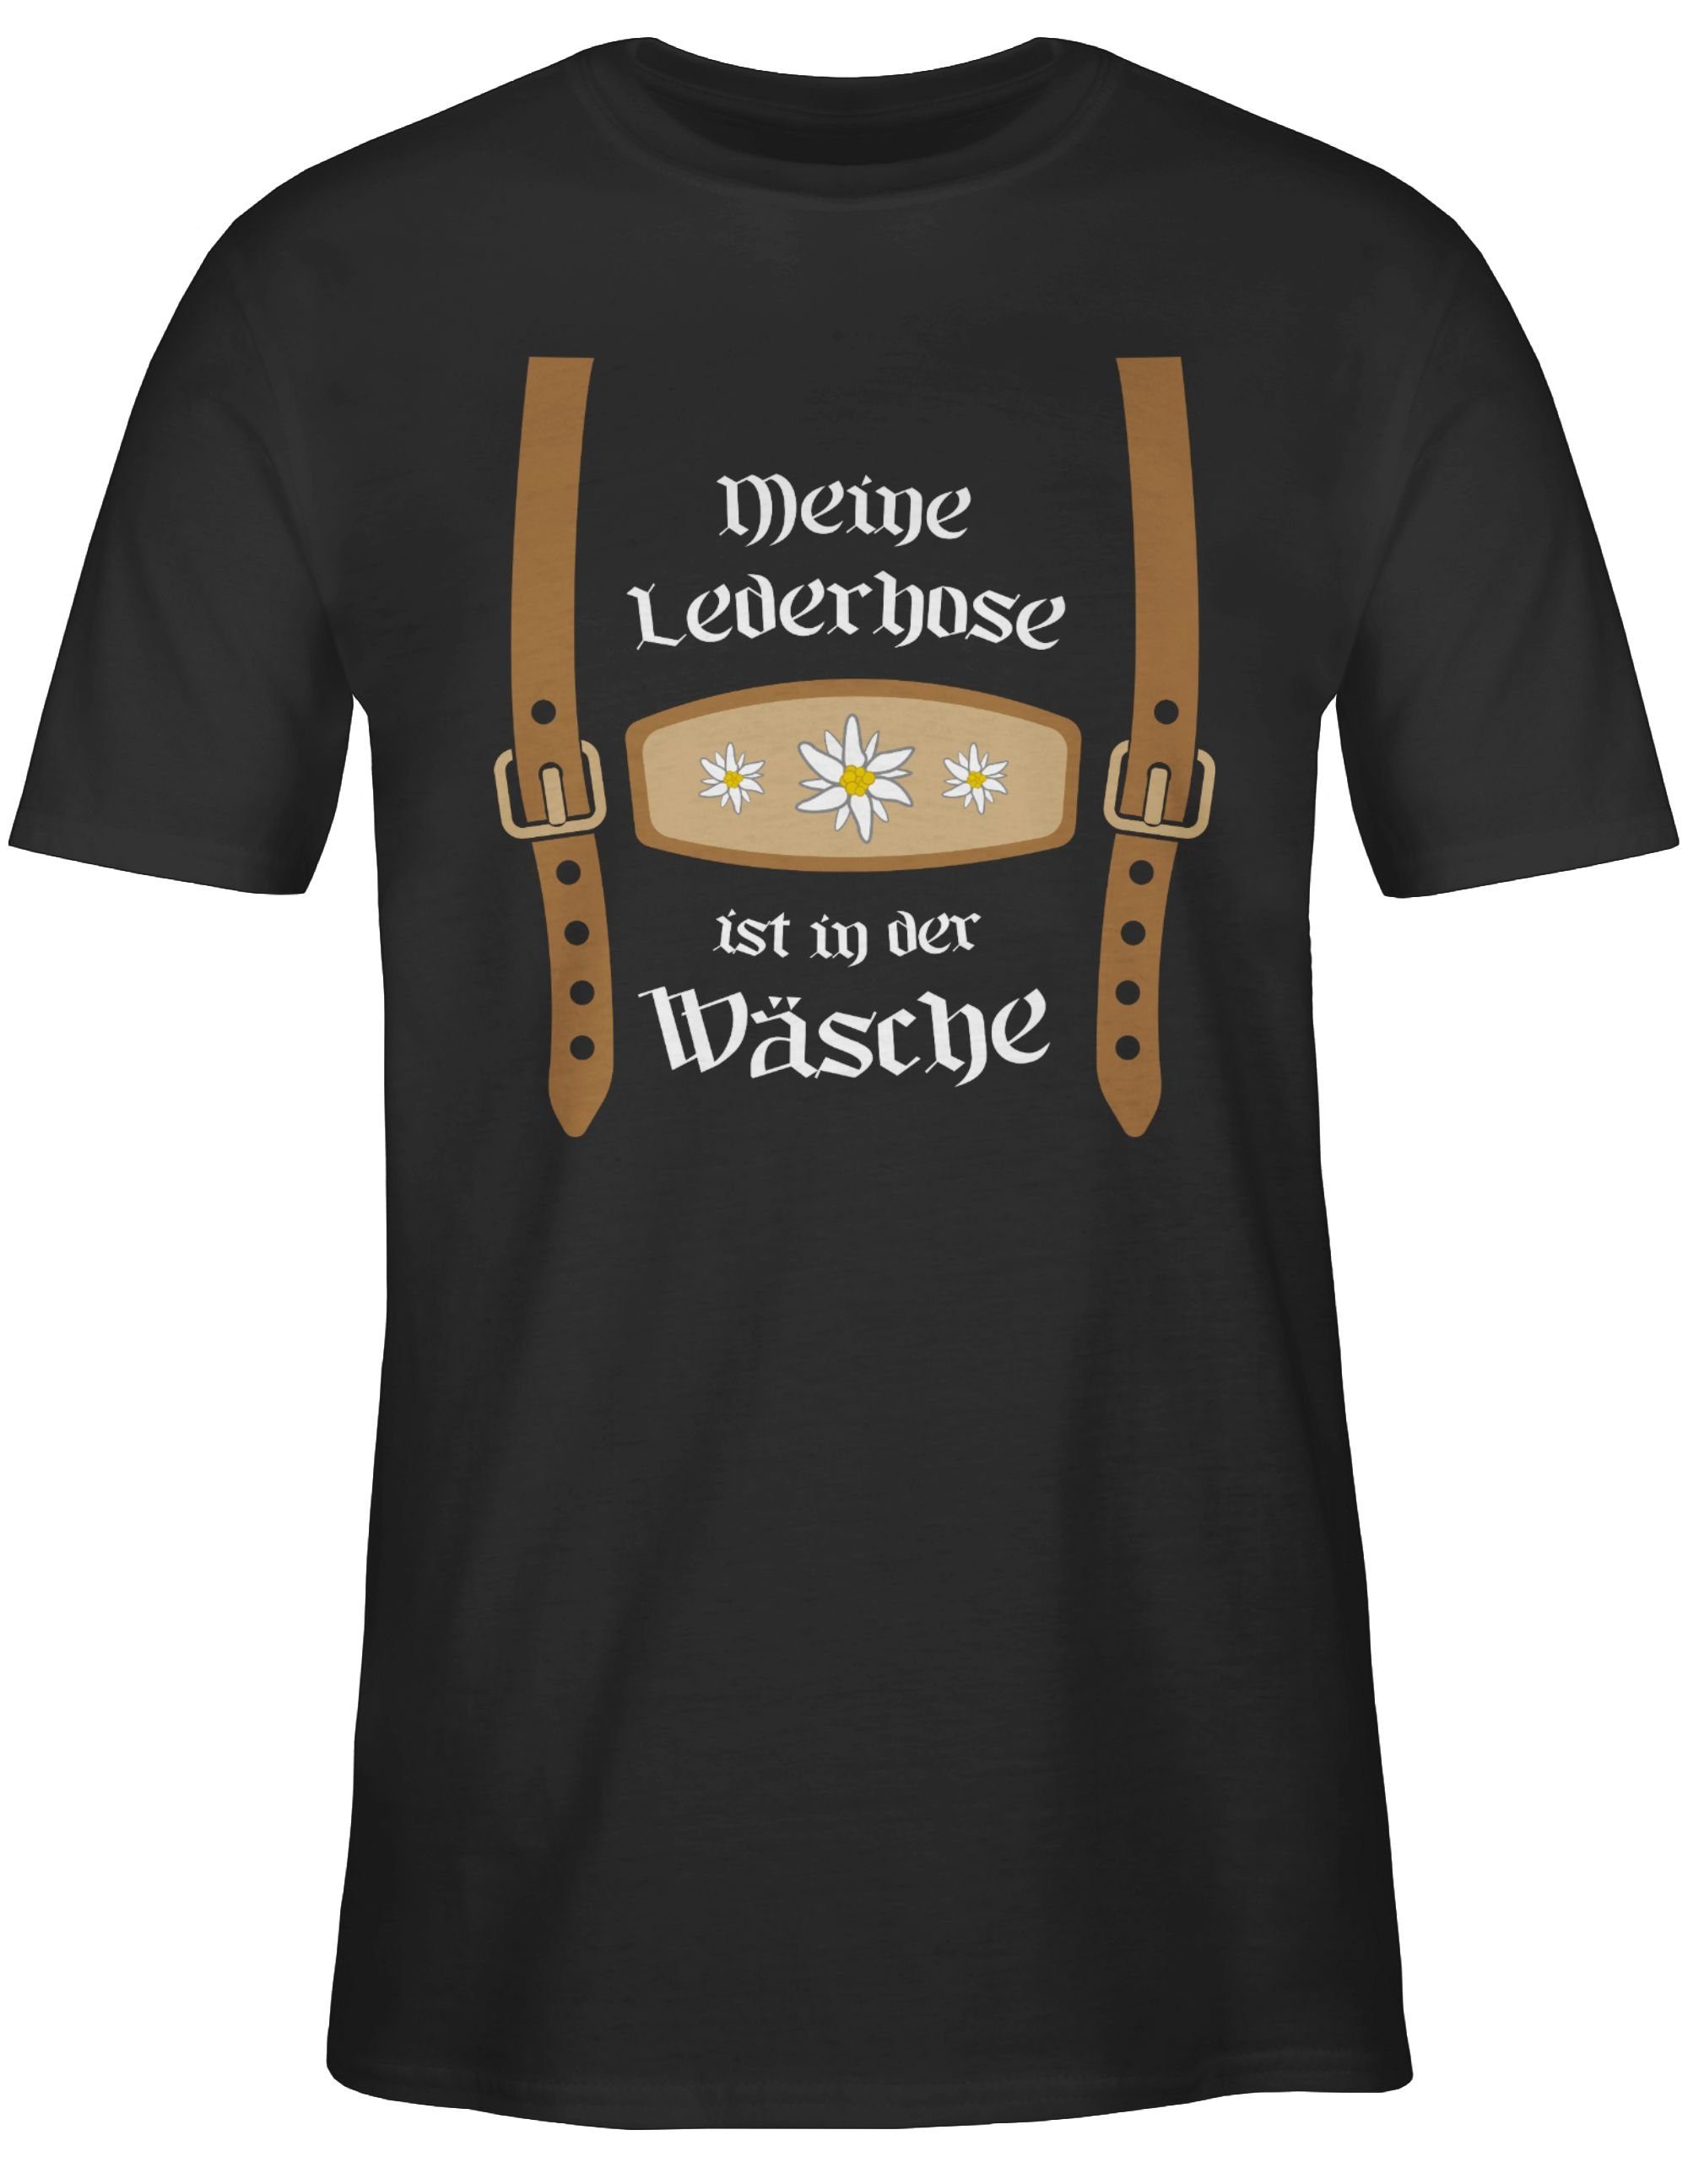 T-Shirt ist für Meine Shirtracer Wäsche der Herren Oktoberfest in Schwarz Lederhose Mode 01